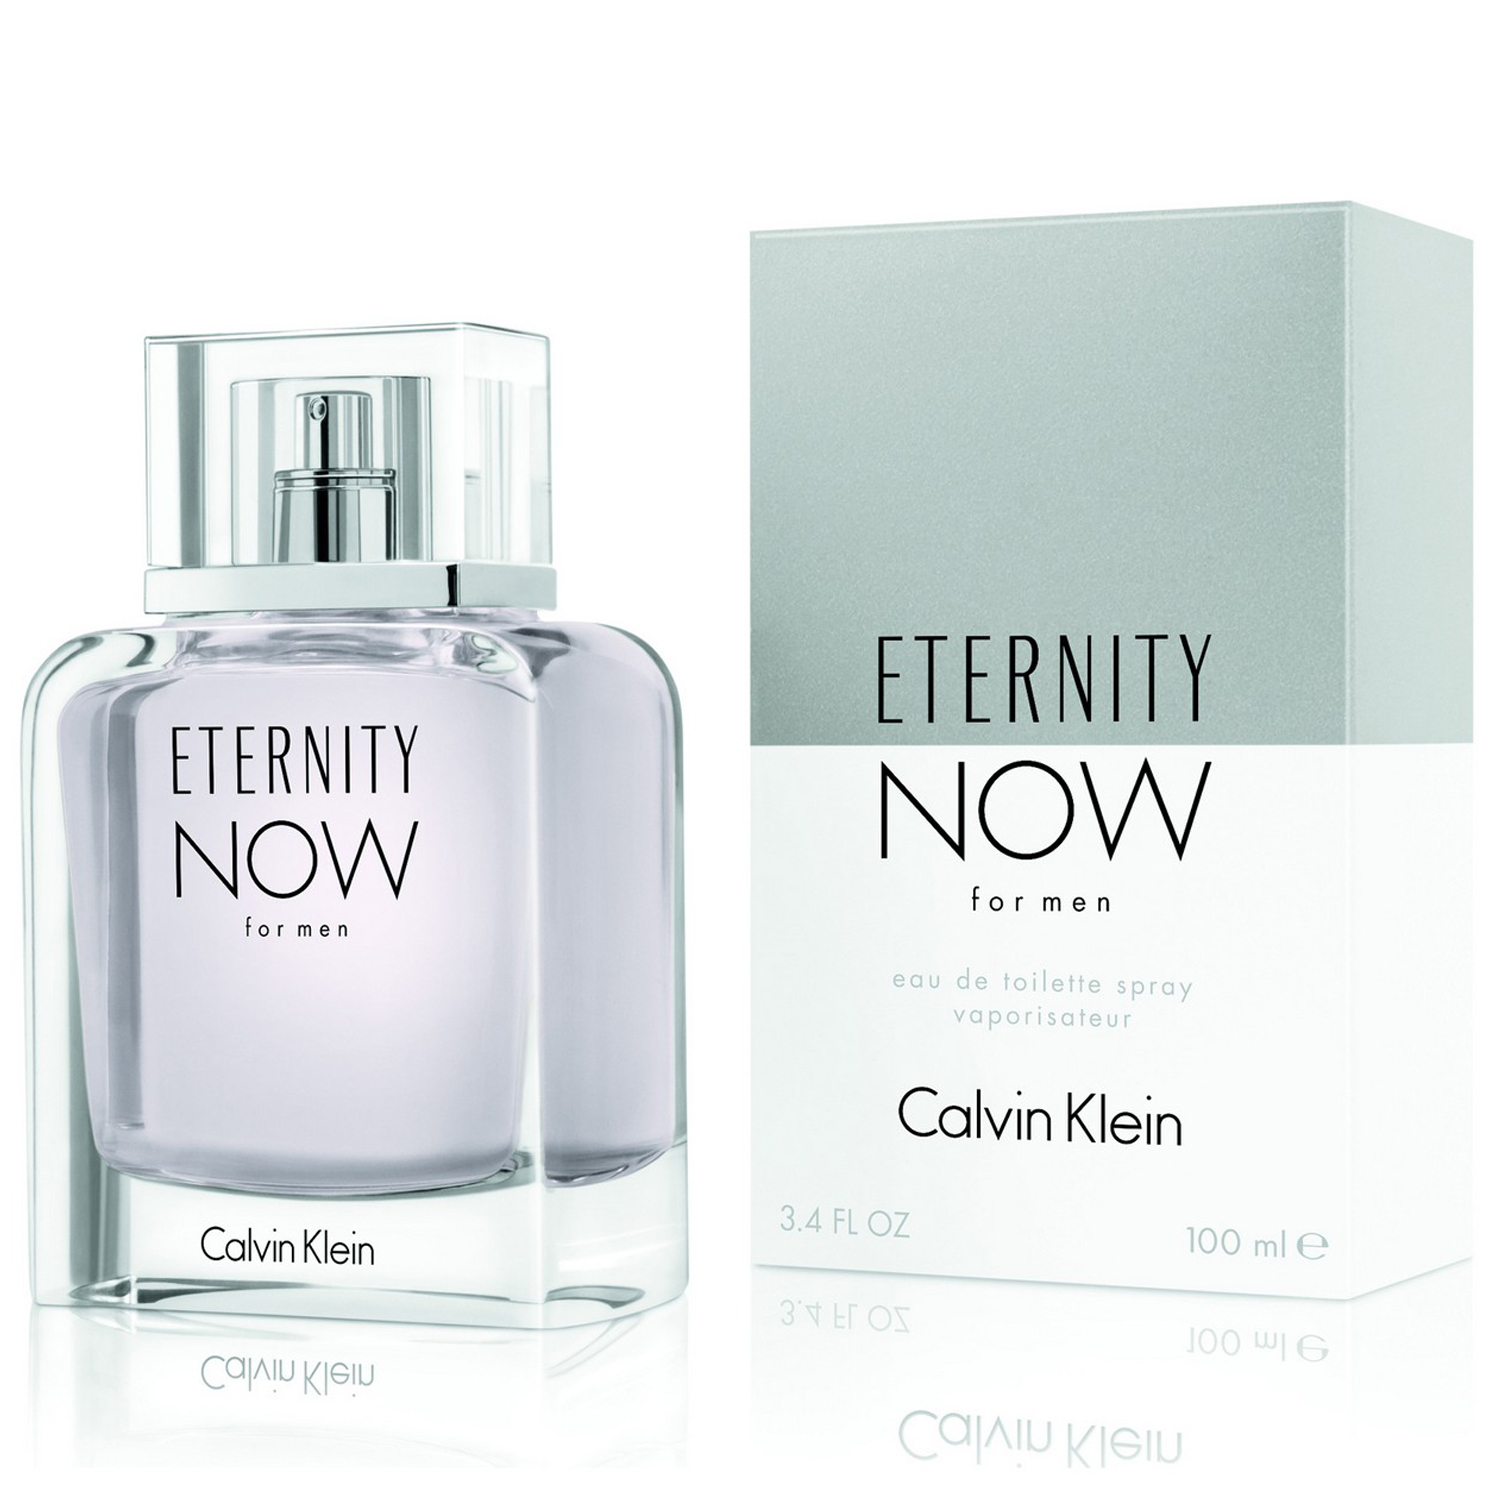 Shop Calvin Klein Eternity Now Eau De Toilette fo Men 100ml